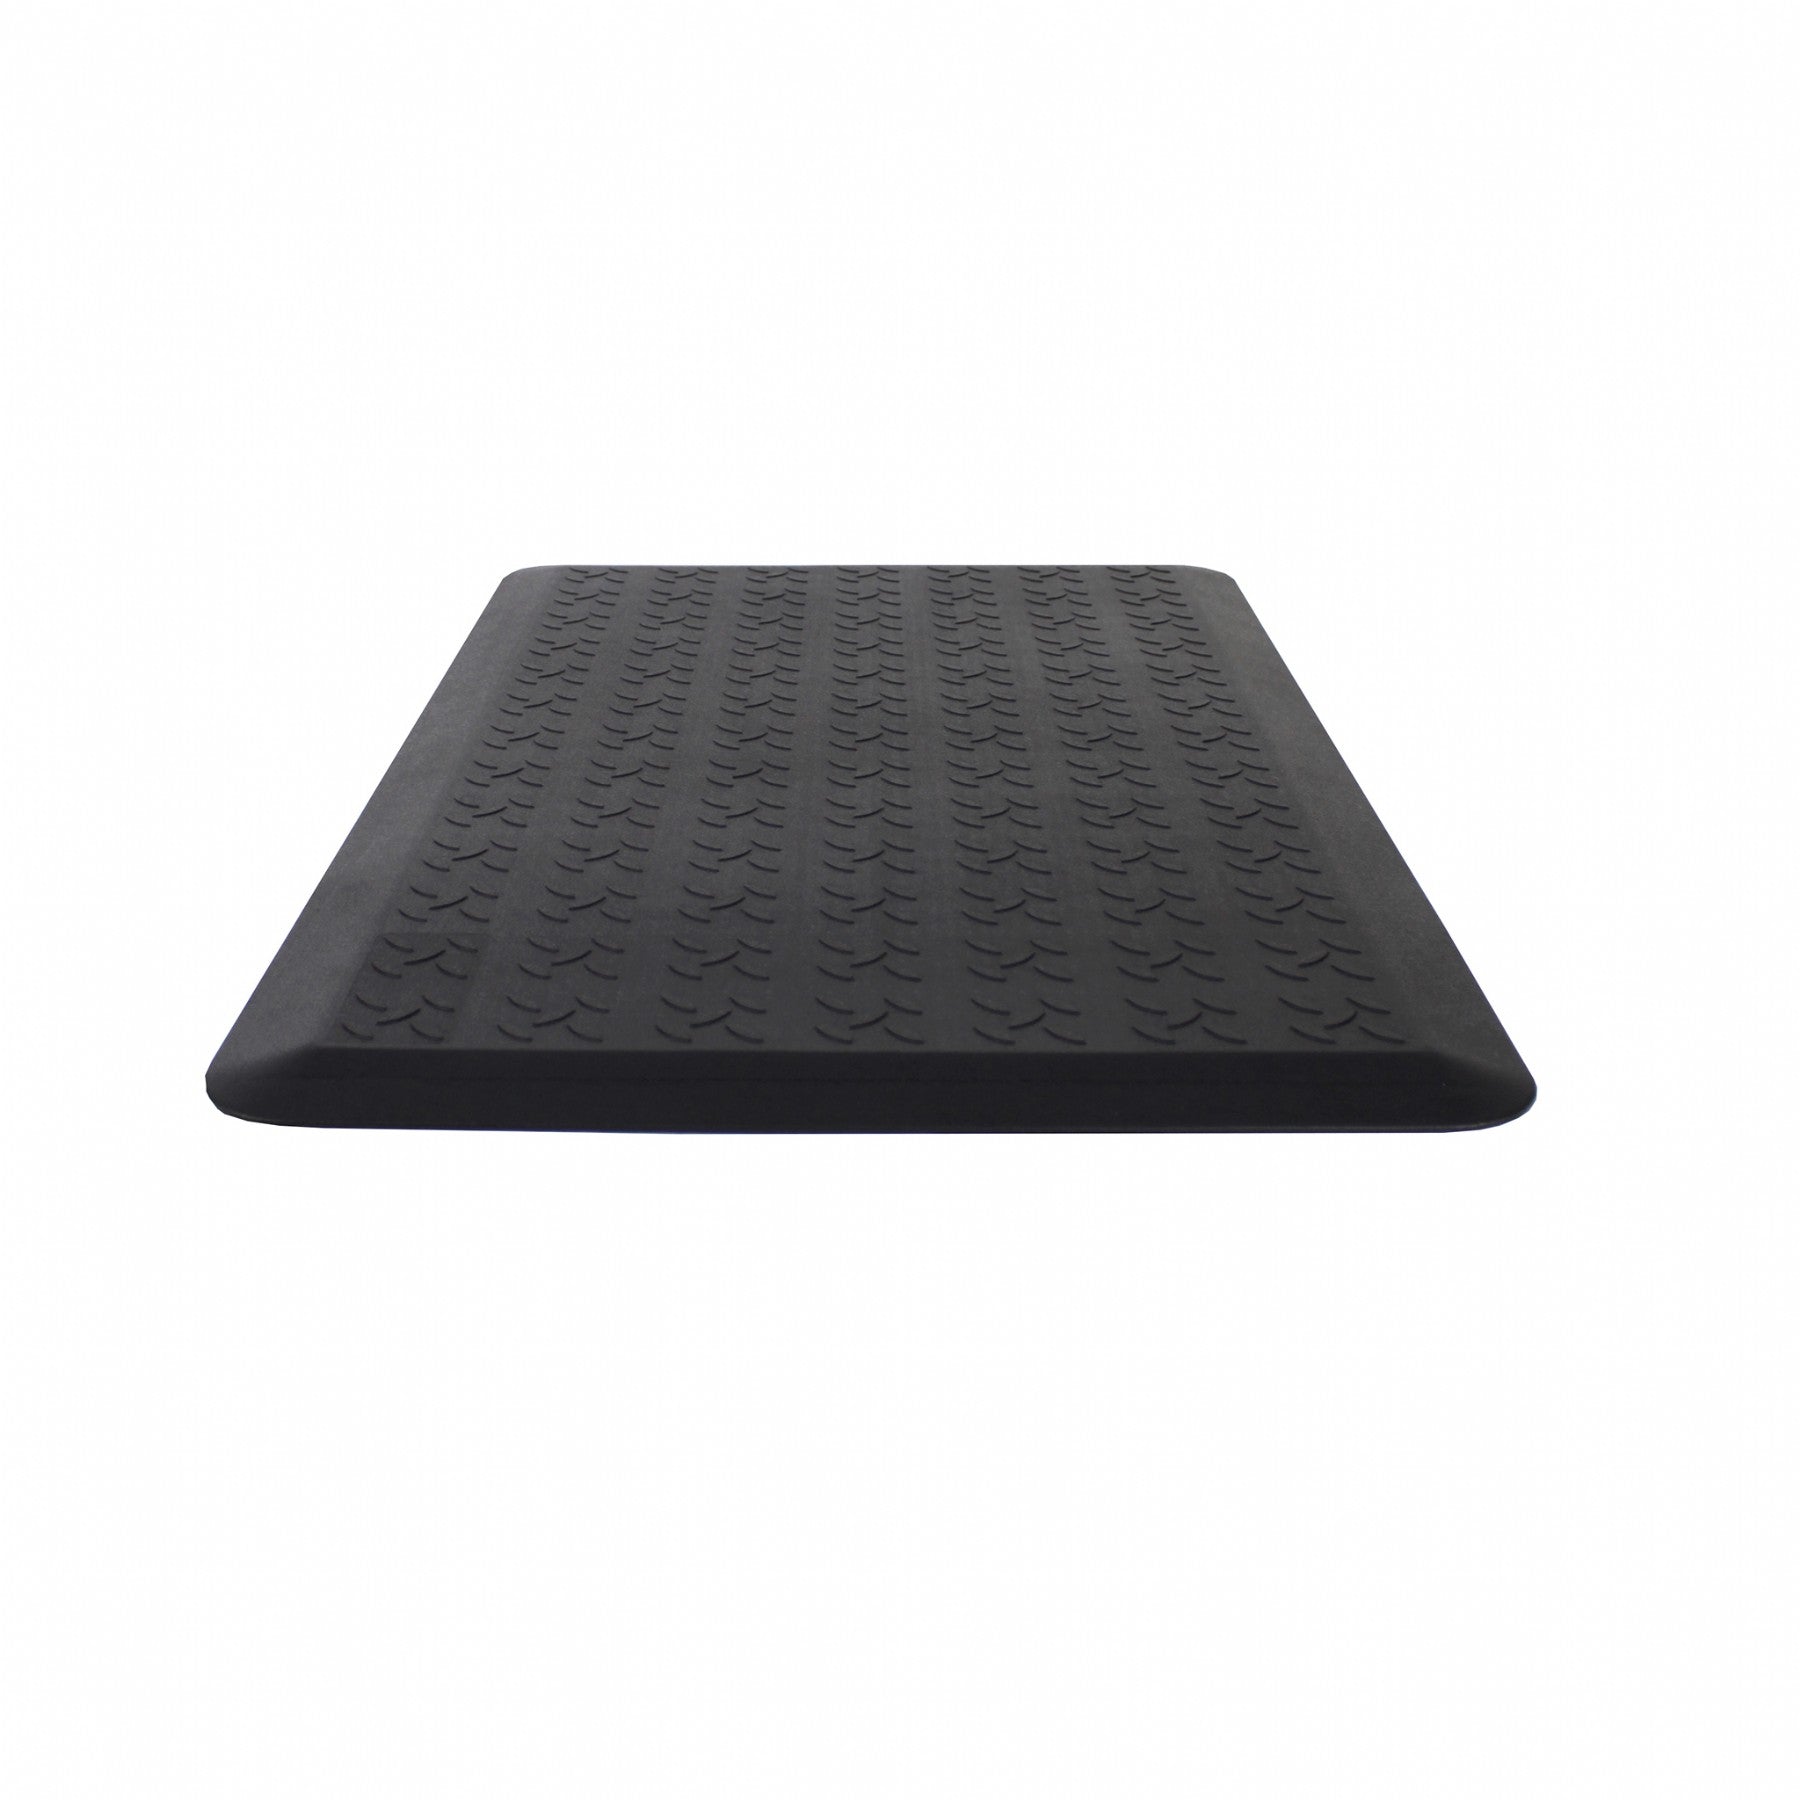 Mobel Anti-Fatigue Standing Desk Floor Mat